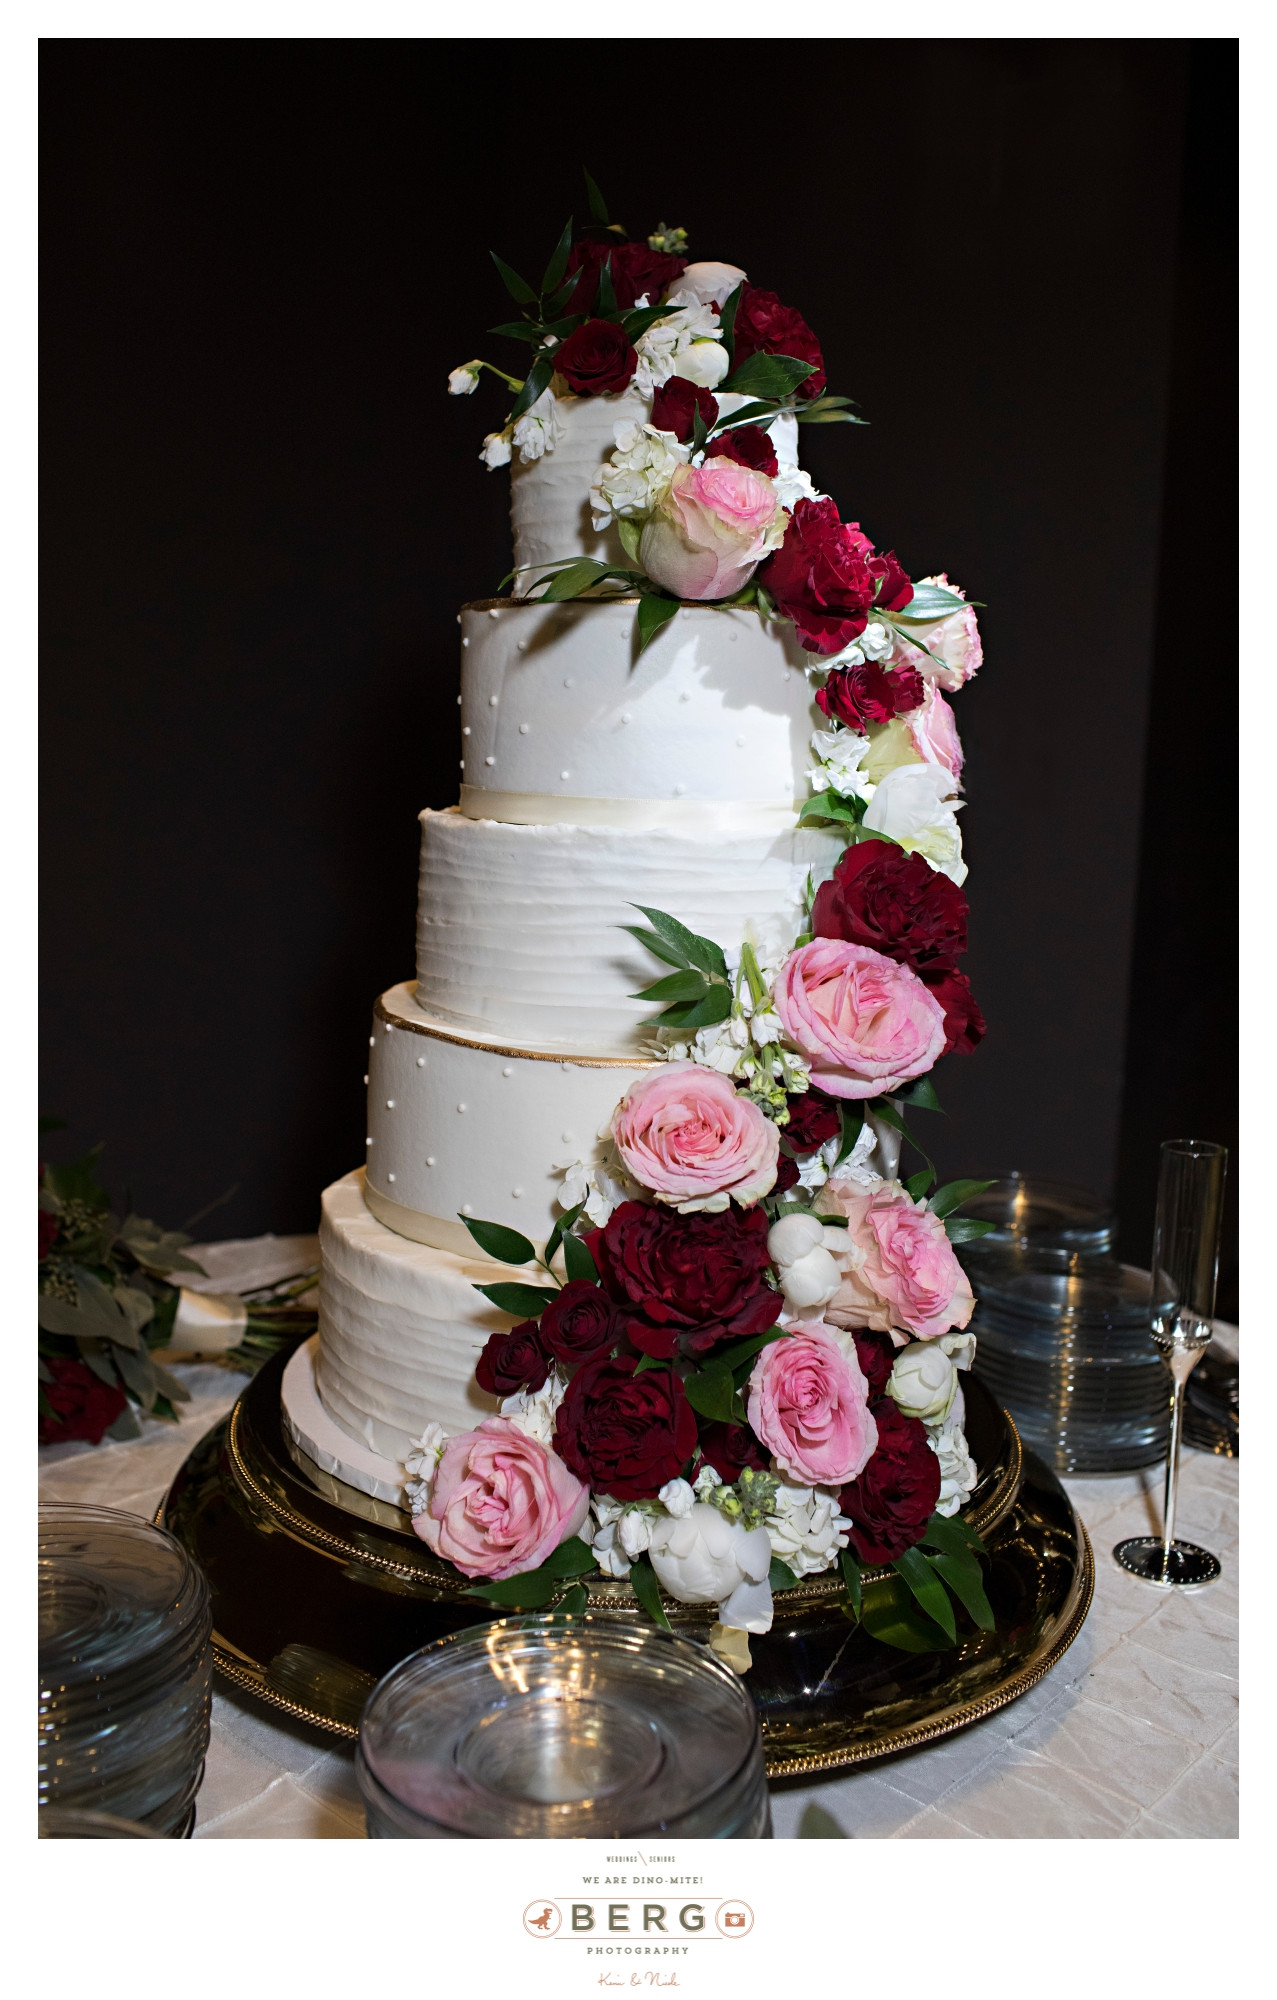 Wedding Cakes Shreveport
 Wedding Cake Shreveport La Wedding Cake From Imacimages Co